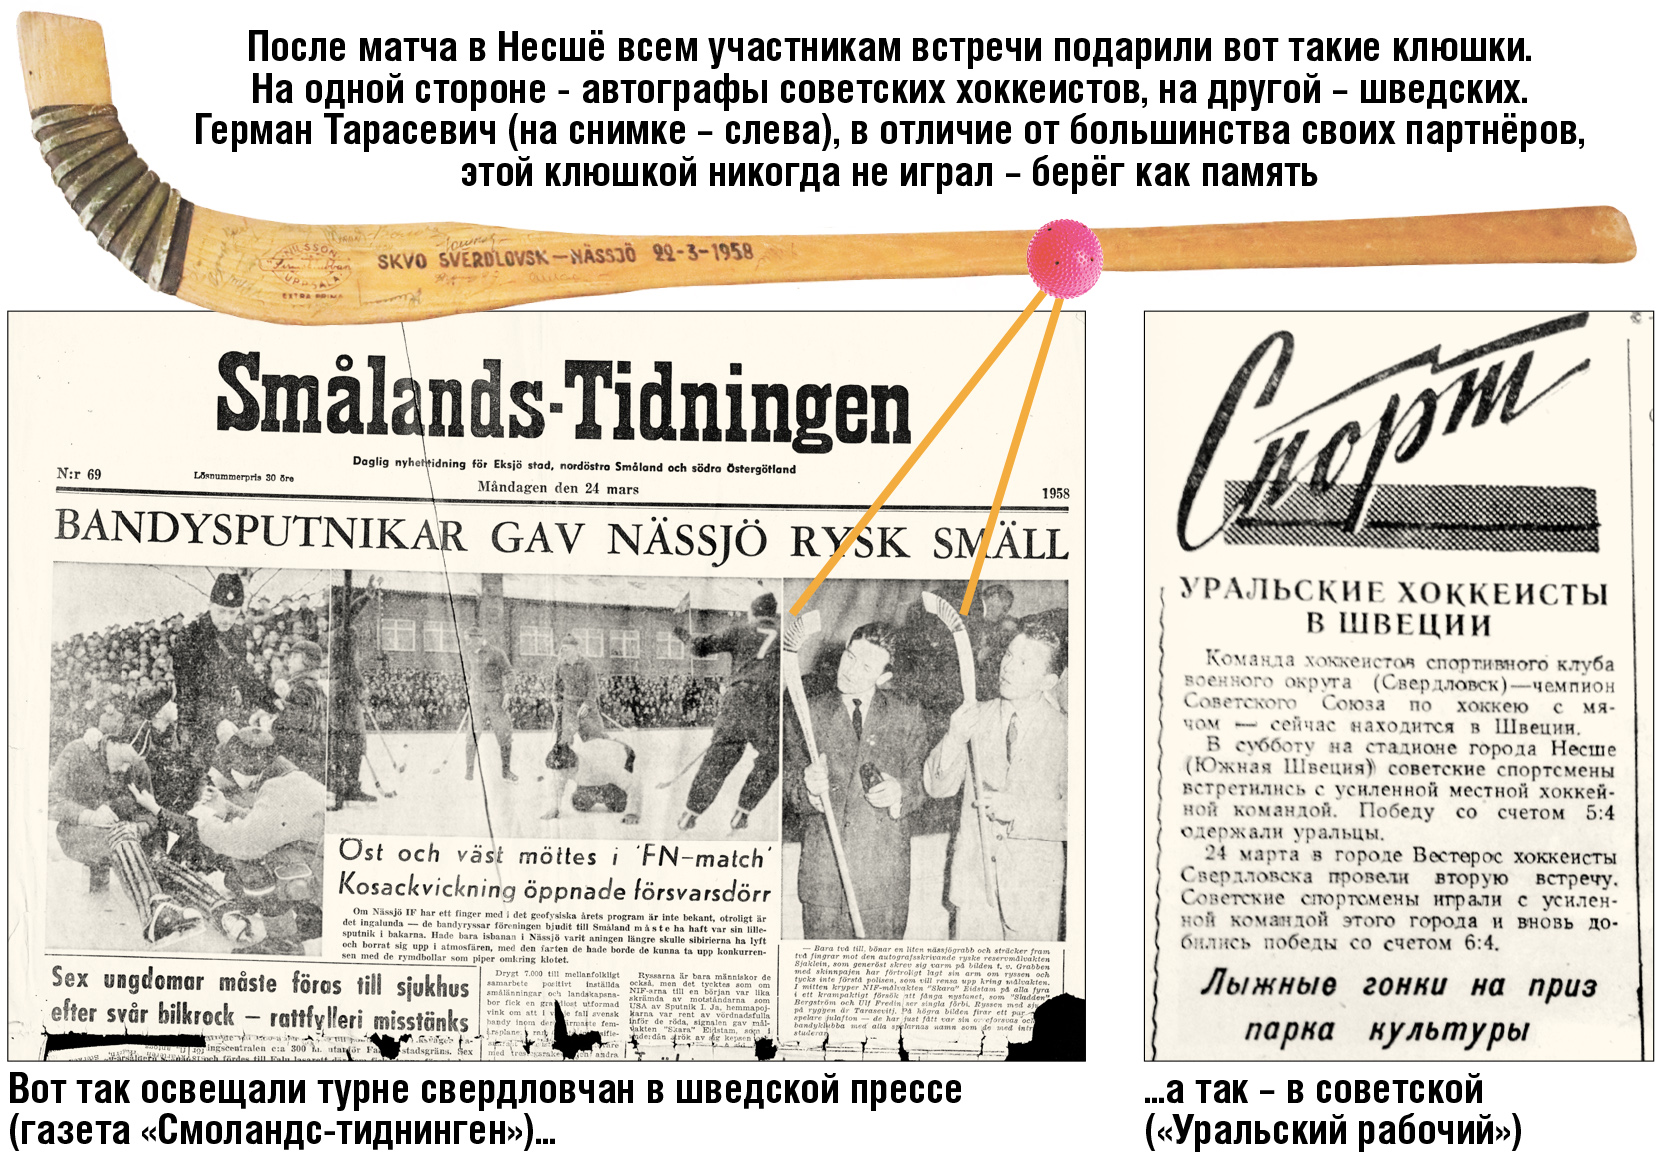 Газета Smalands-Tidningen март 1958 года и клюшка Германа Тарасевича